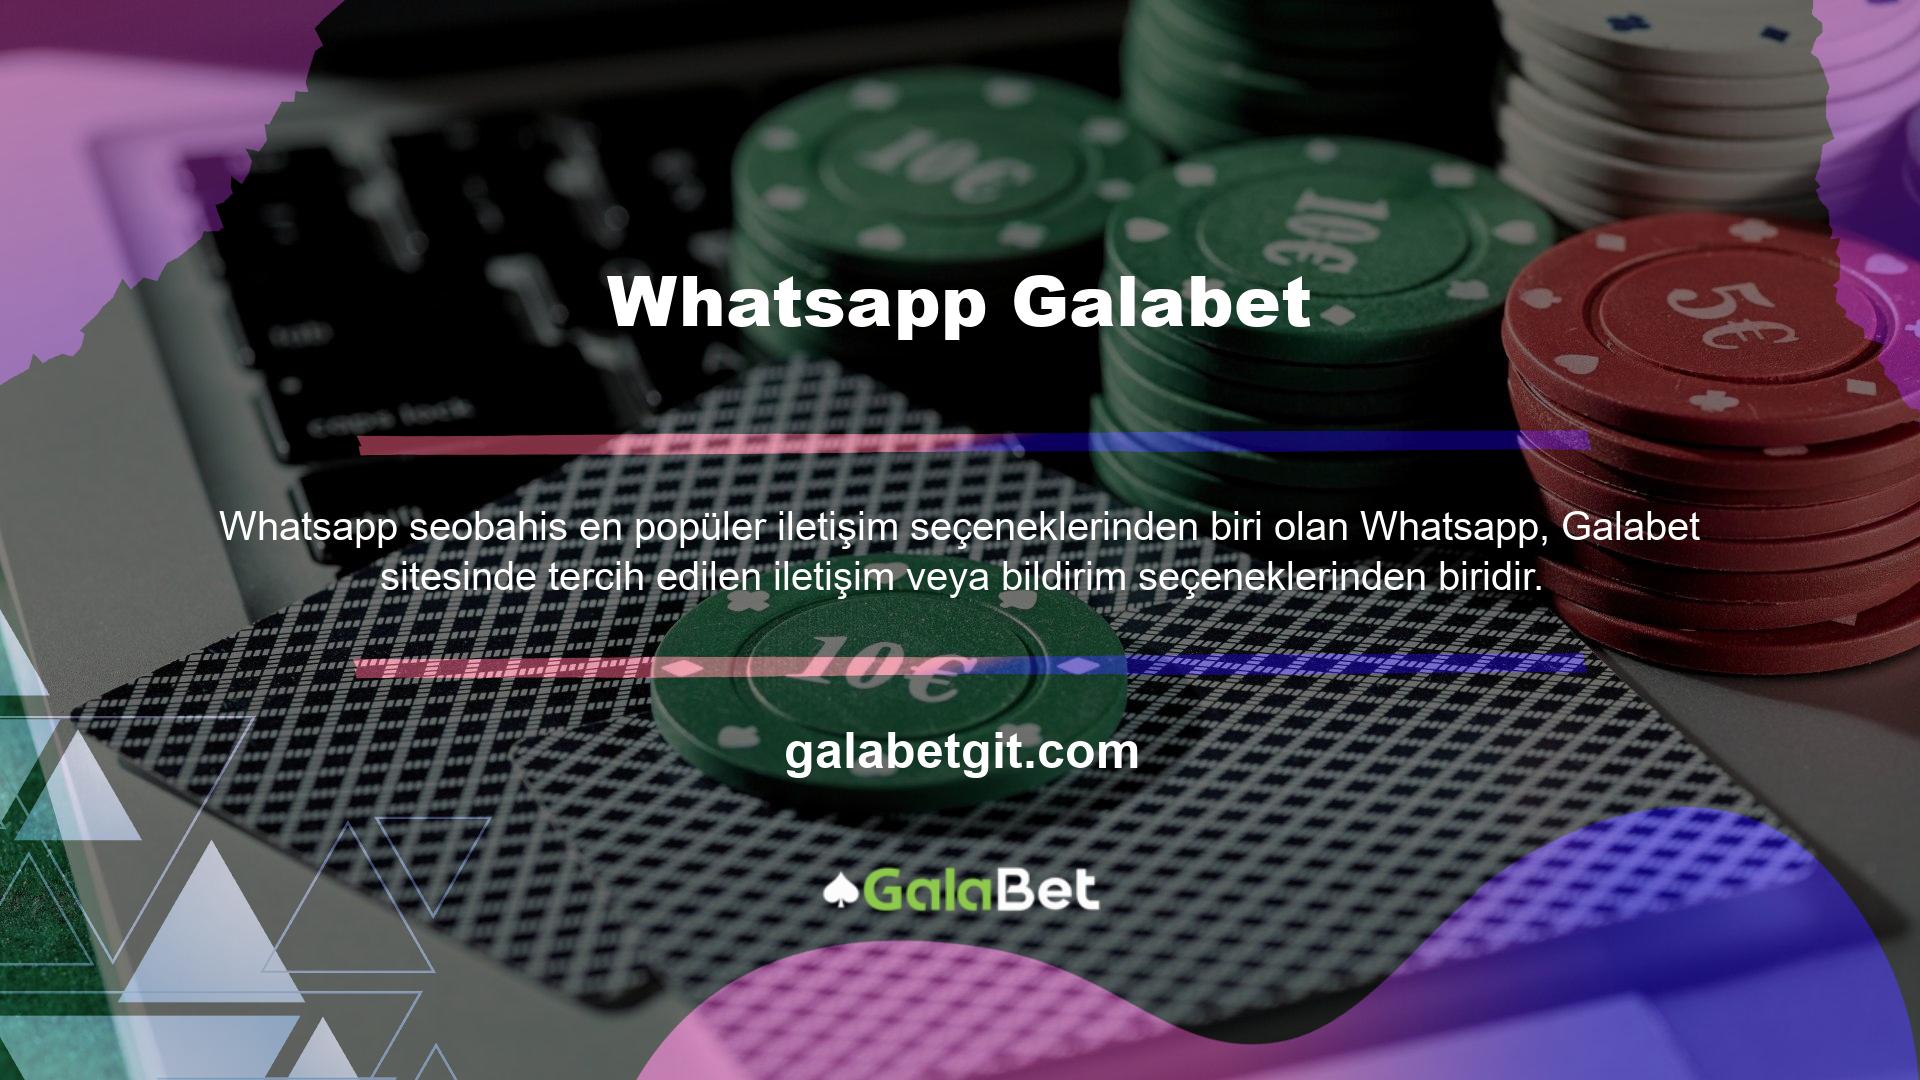 Galabet Whatsapp kullanıyor mu? Evet, bu sitenin sunduğu hizmetlerden birinin Whatsapp uygulaması olduğunu görebilirsiniz